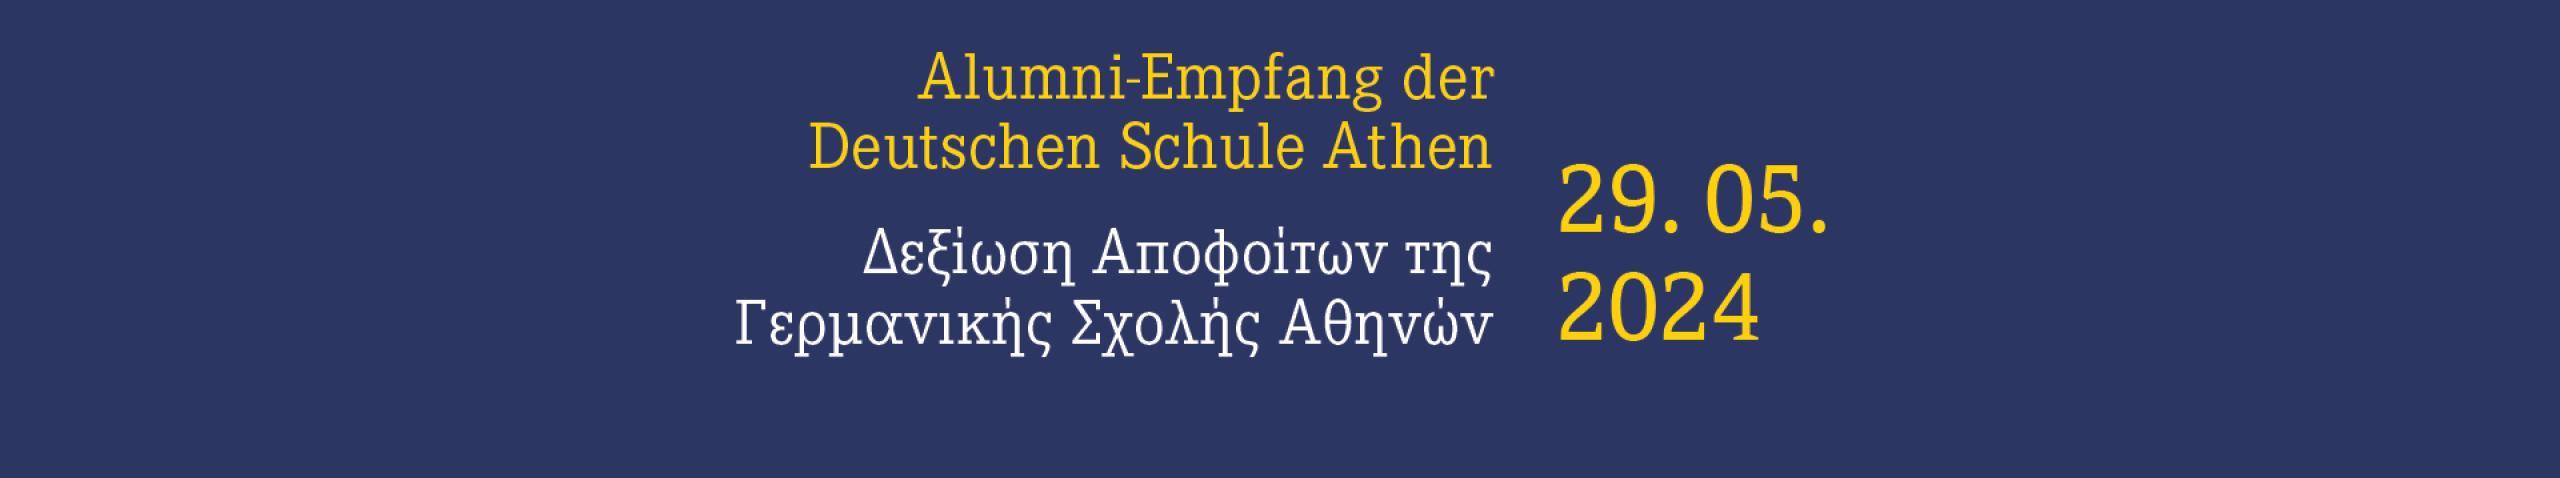 Alumni-Empfang der Deutschen Schule Athen